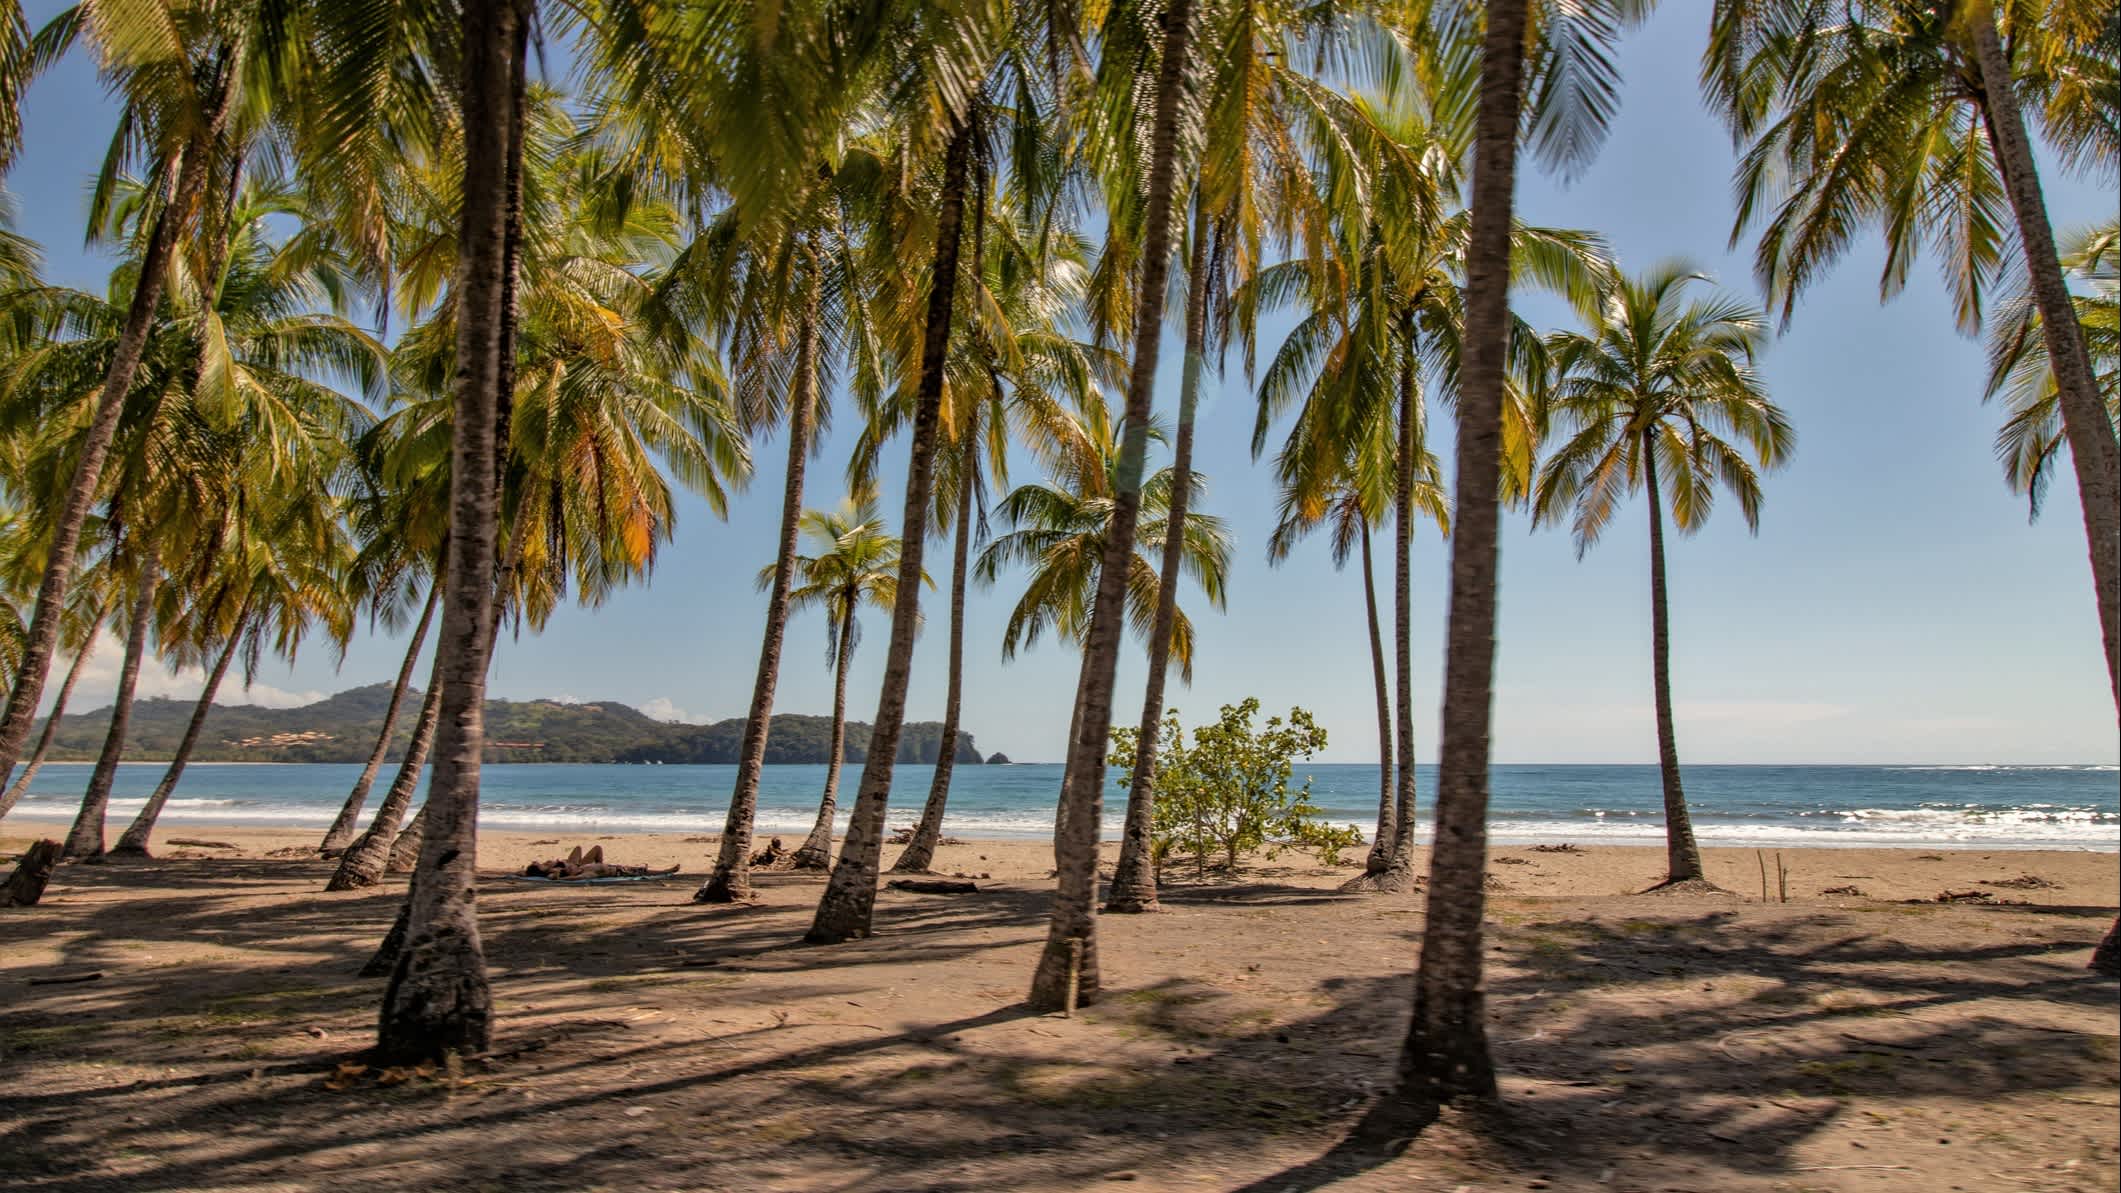 Blick durch viele Palmen auf den Carrillo-Strand in Guanacaste in Costa Rica bei sonnigem Wetter.